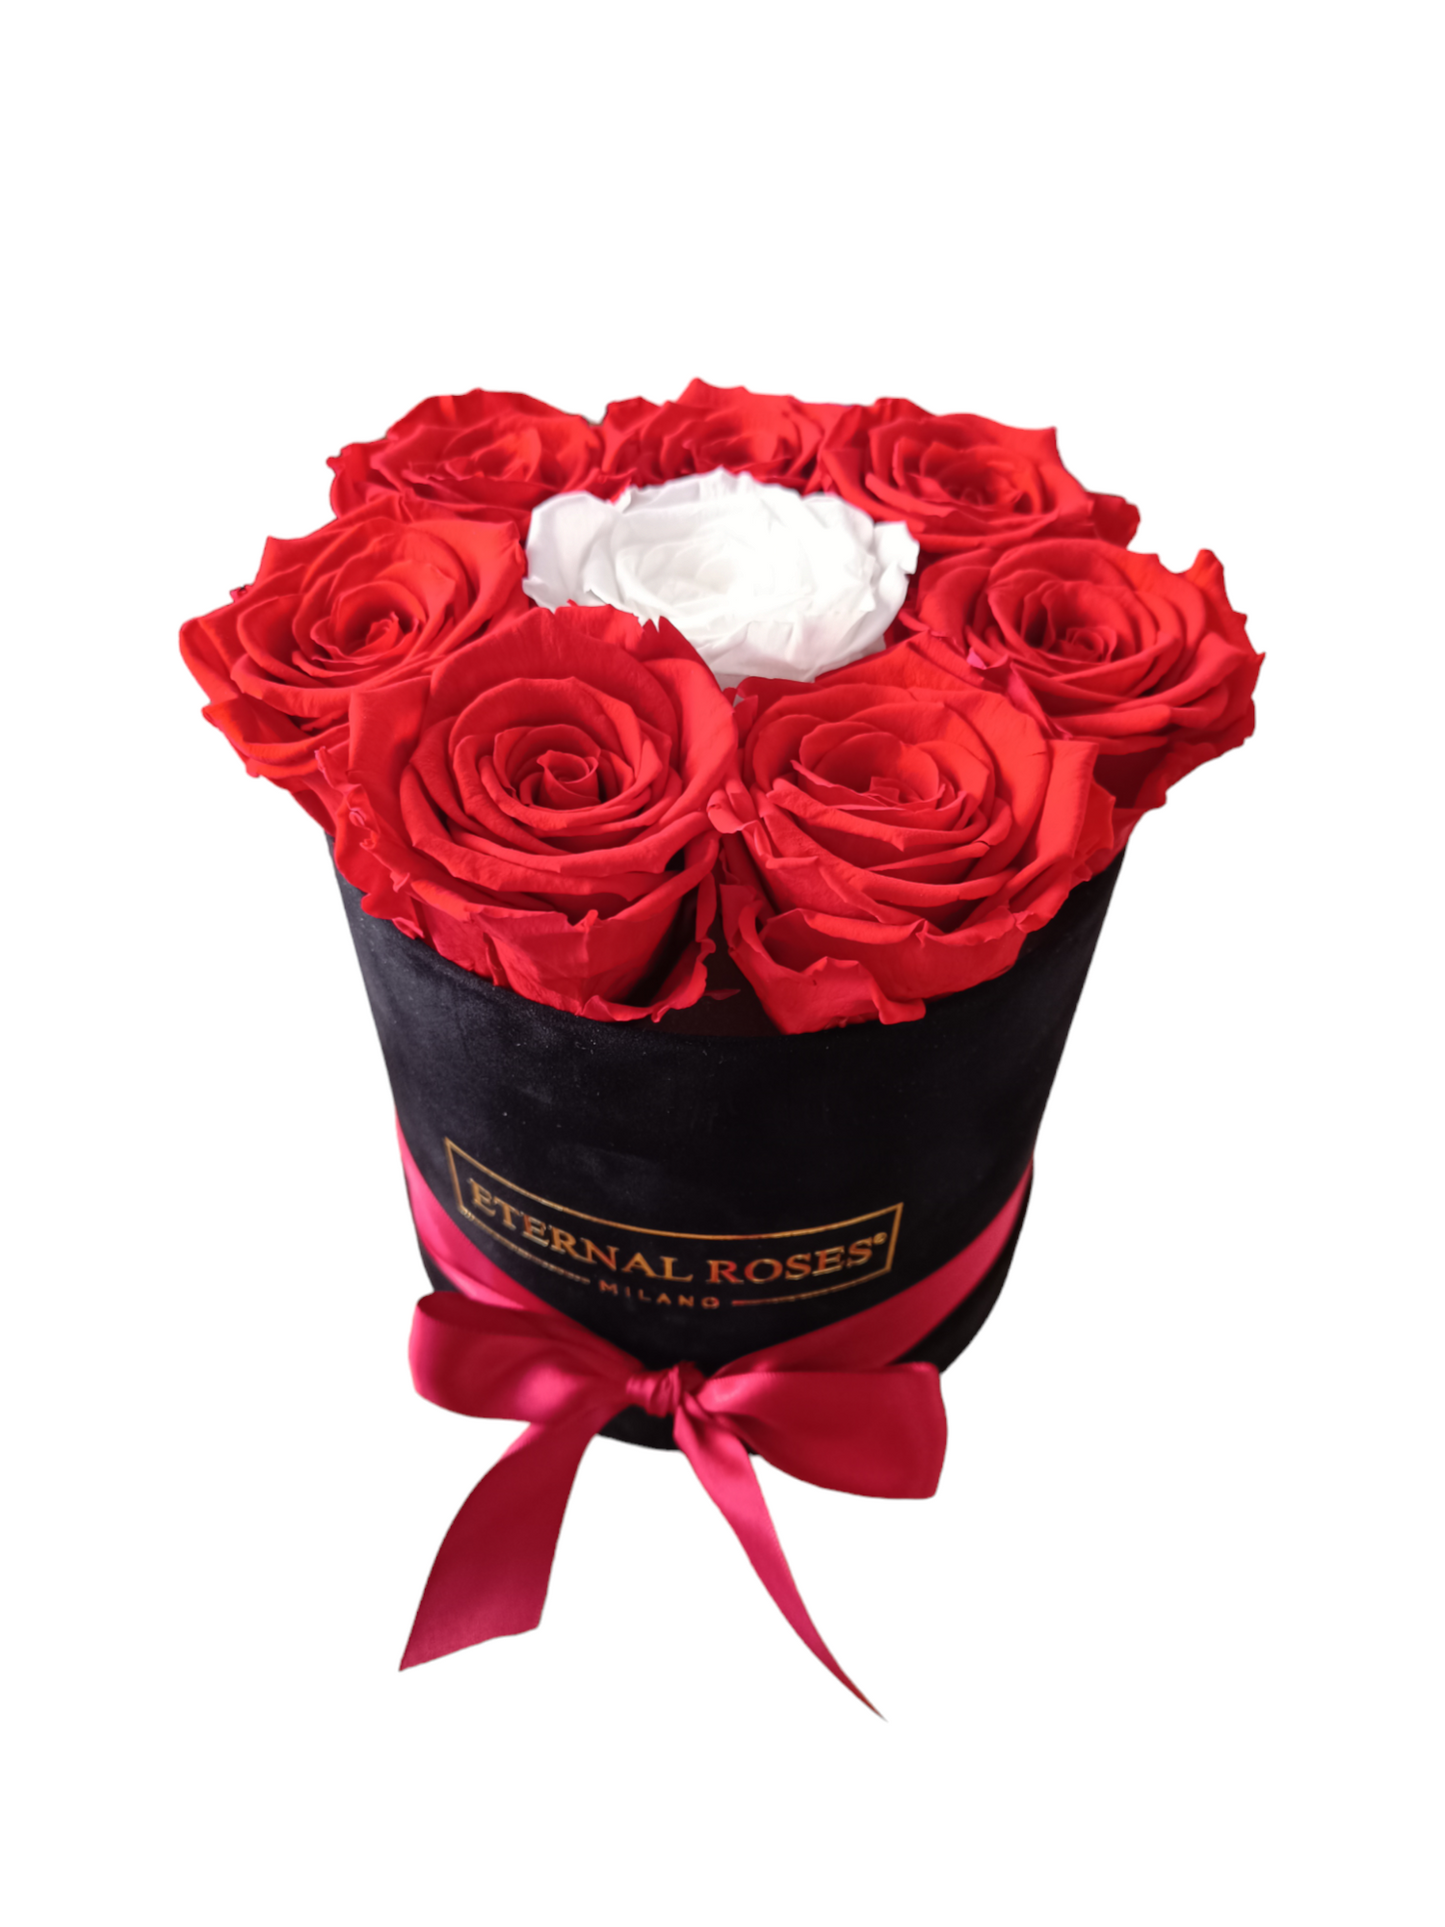 Box Luxury Nero M - Rose Stabilizzate Rosse e Bianche